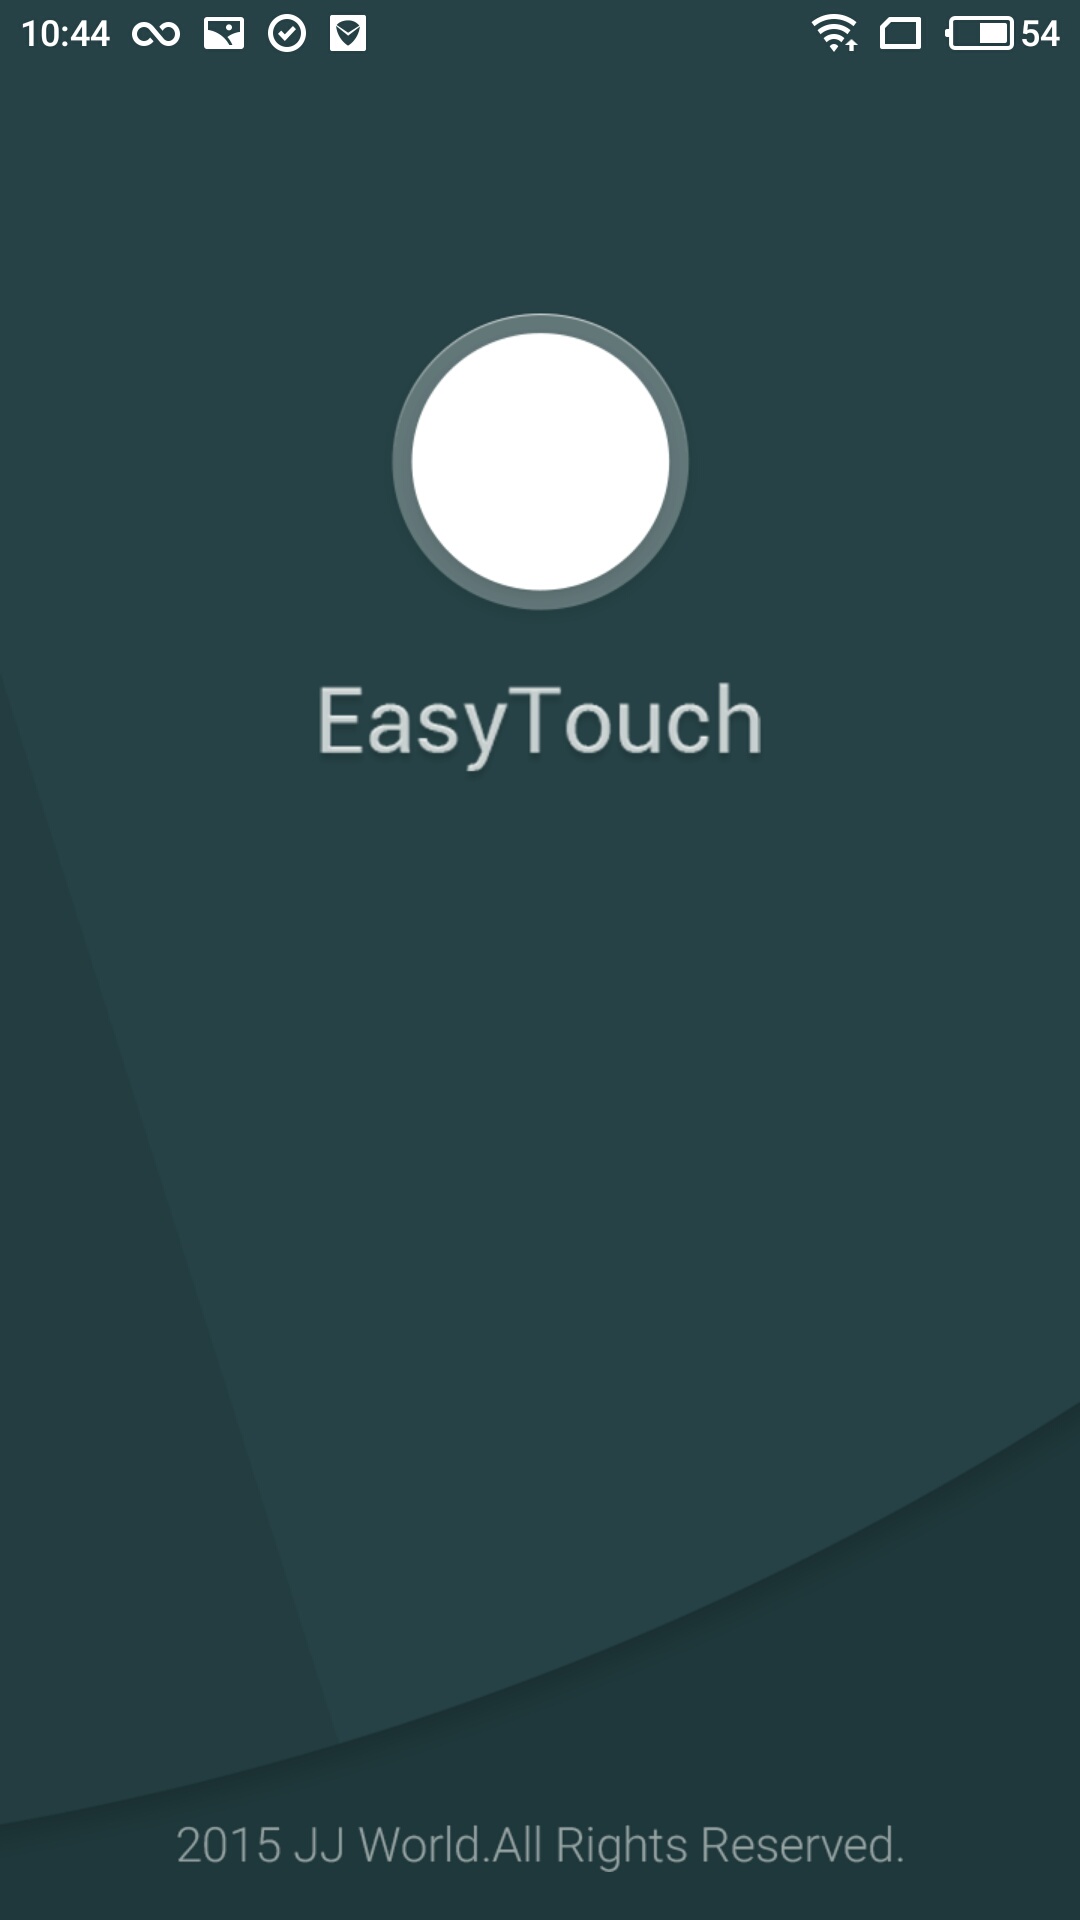 easytouch虚拟按键助手安卓版 v4.6.1截图